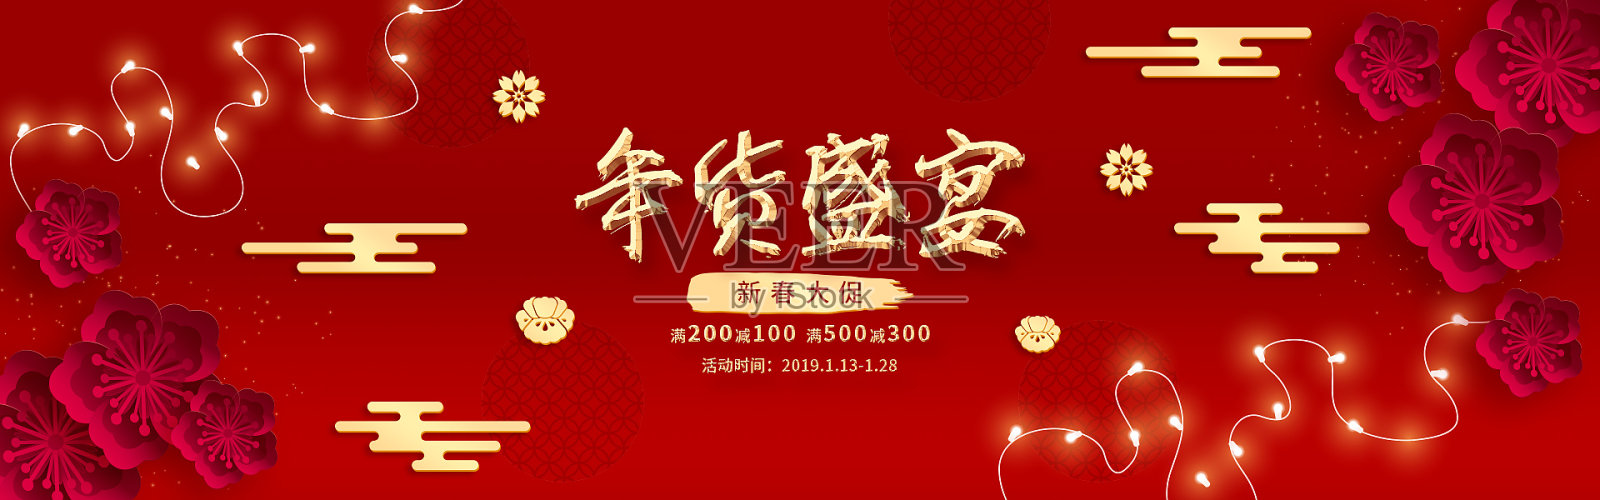 中国红电商年货节促销海报设计模板素材